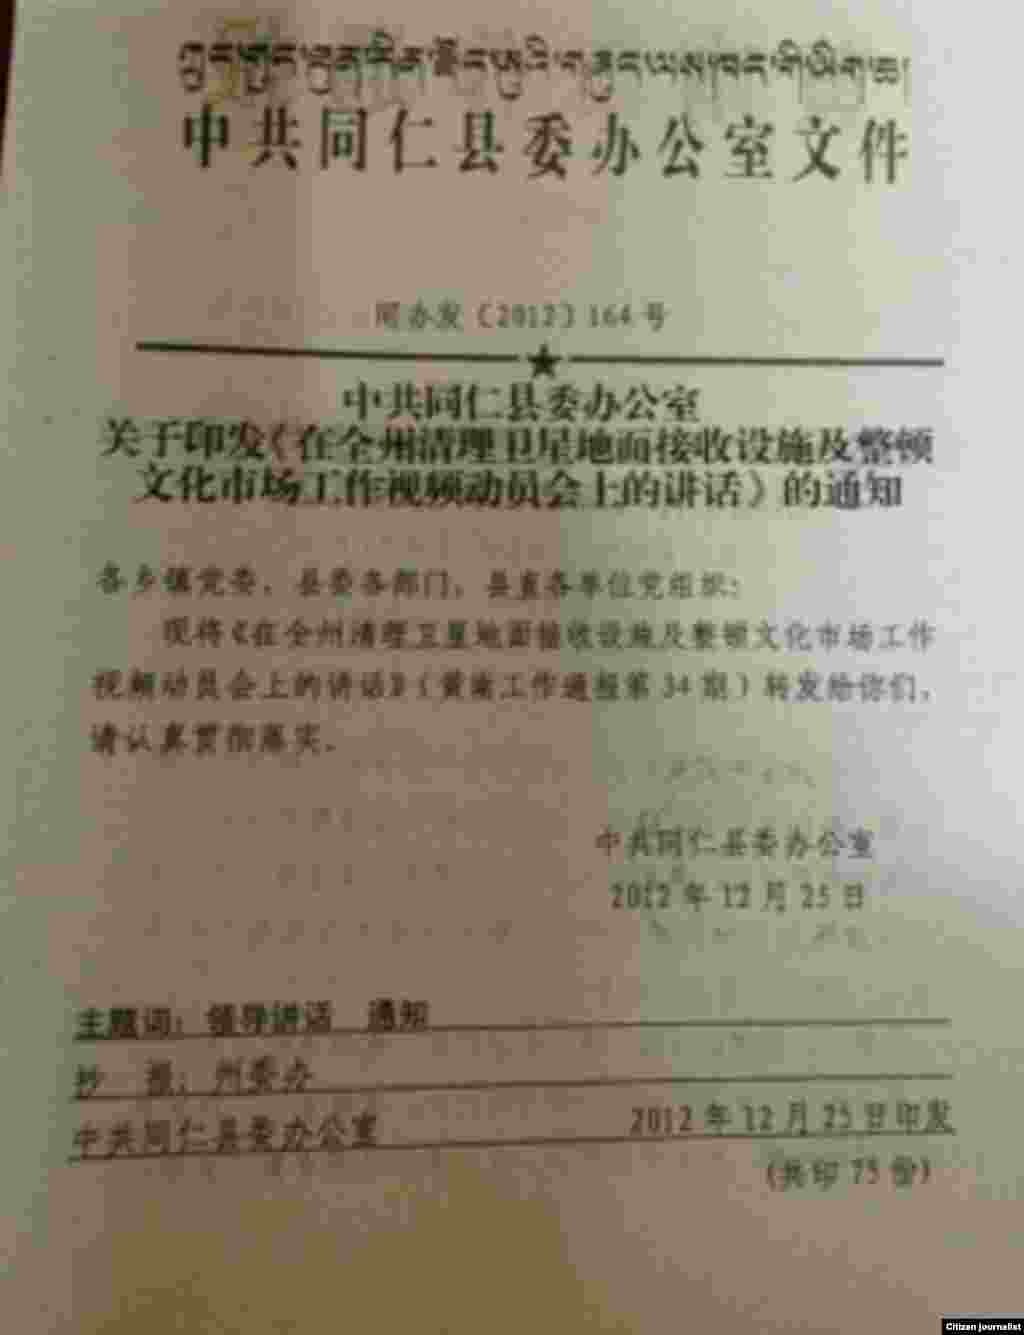 同仁县当局的一份文件传达州官员查处卫星电视接收设施的指示。